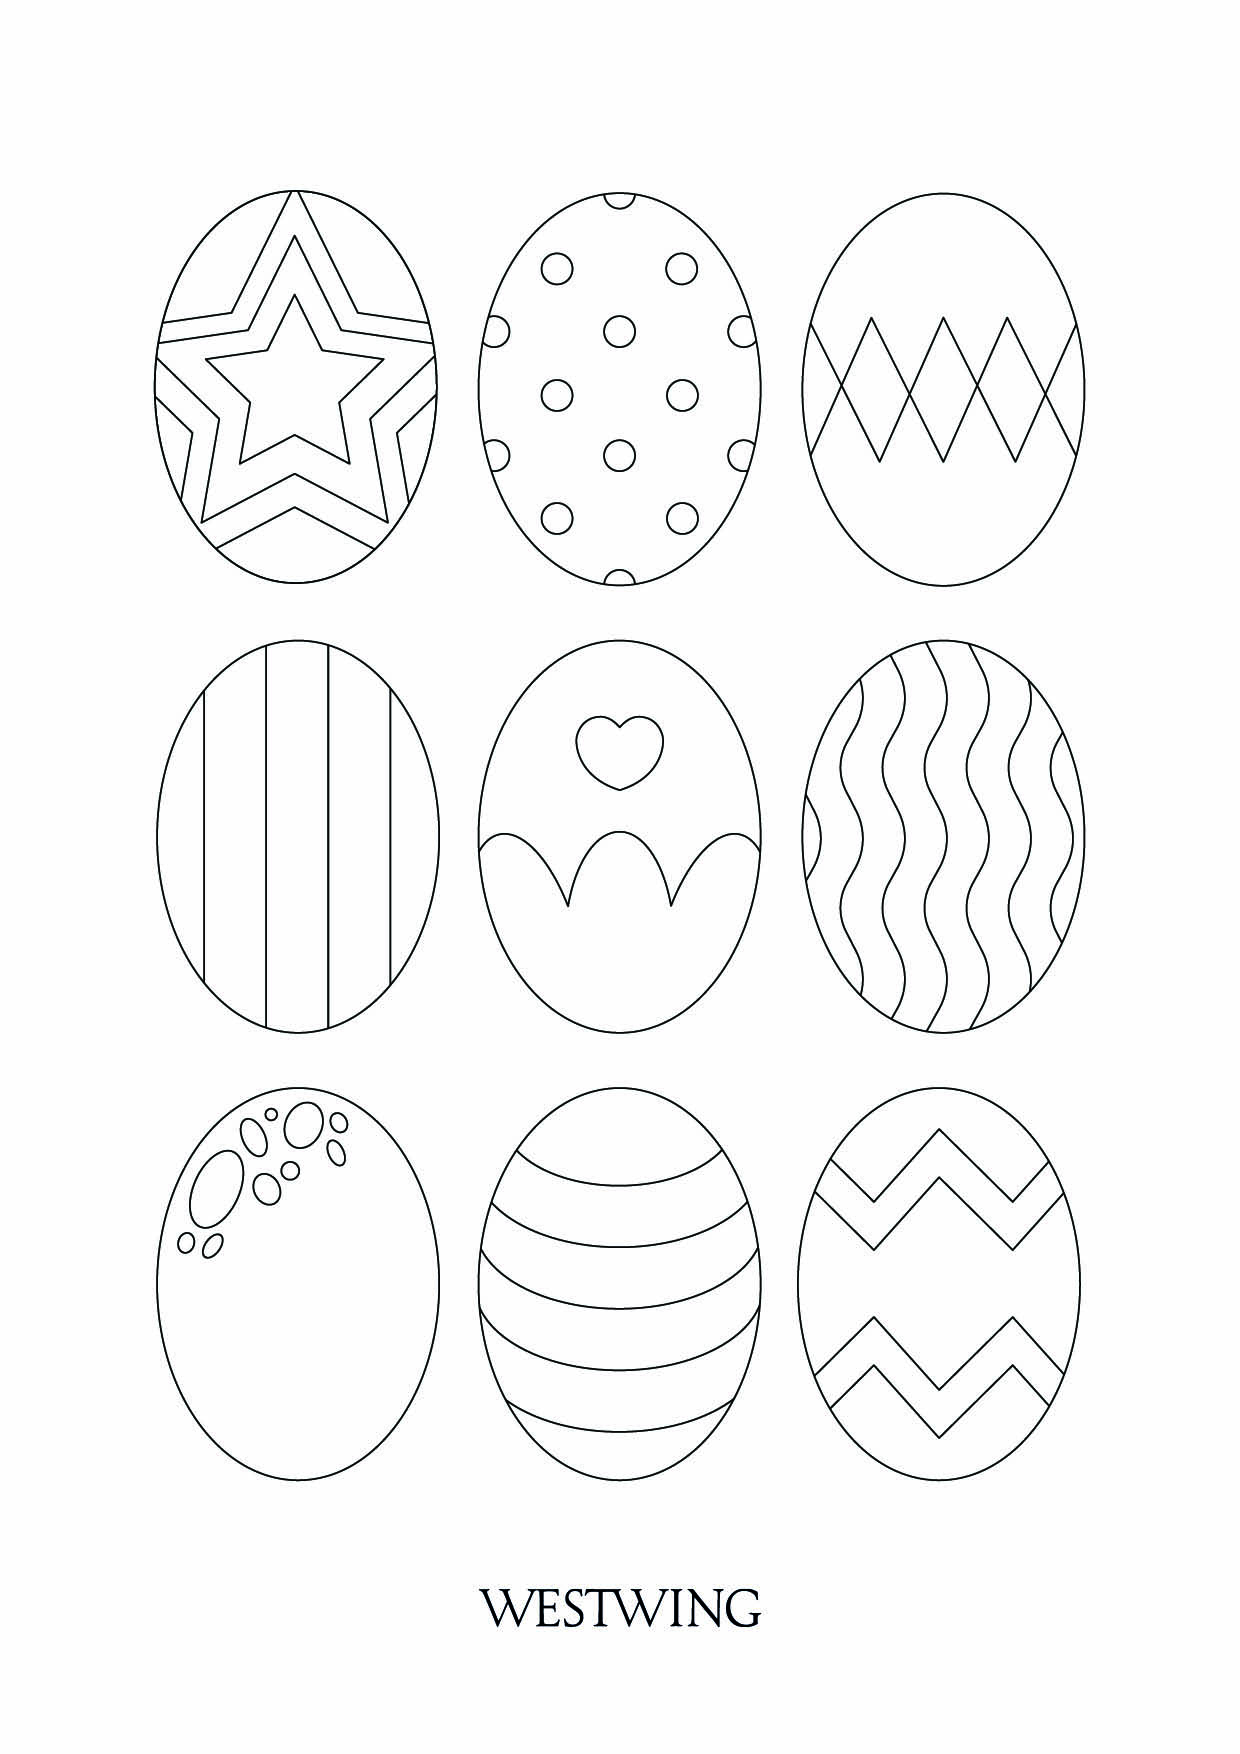 Páginas para colorear de Pascua para imprimir